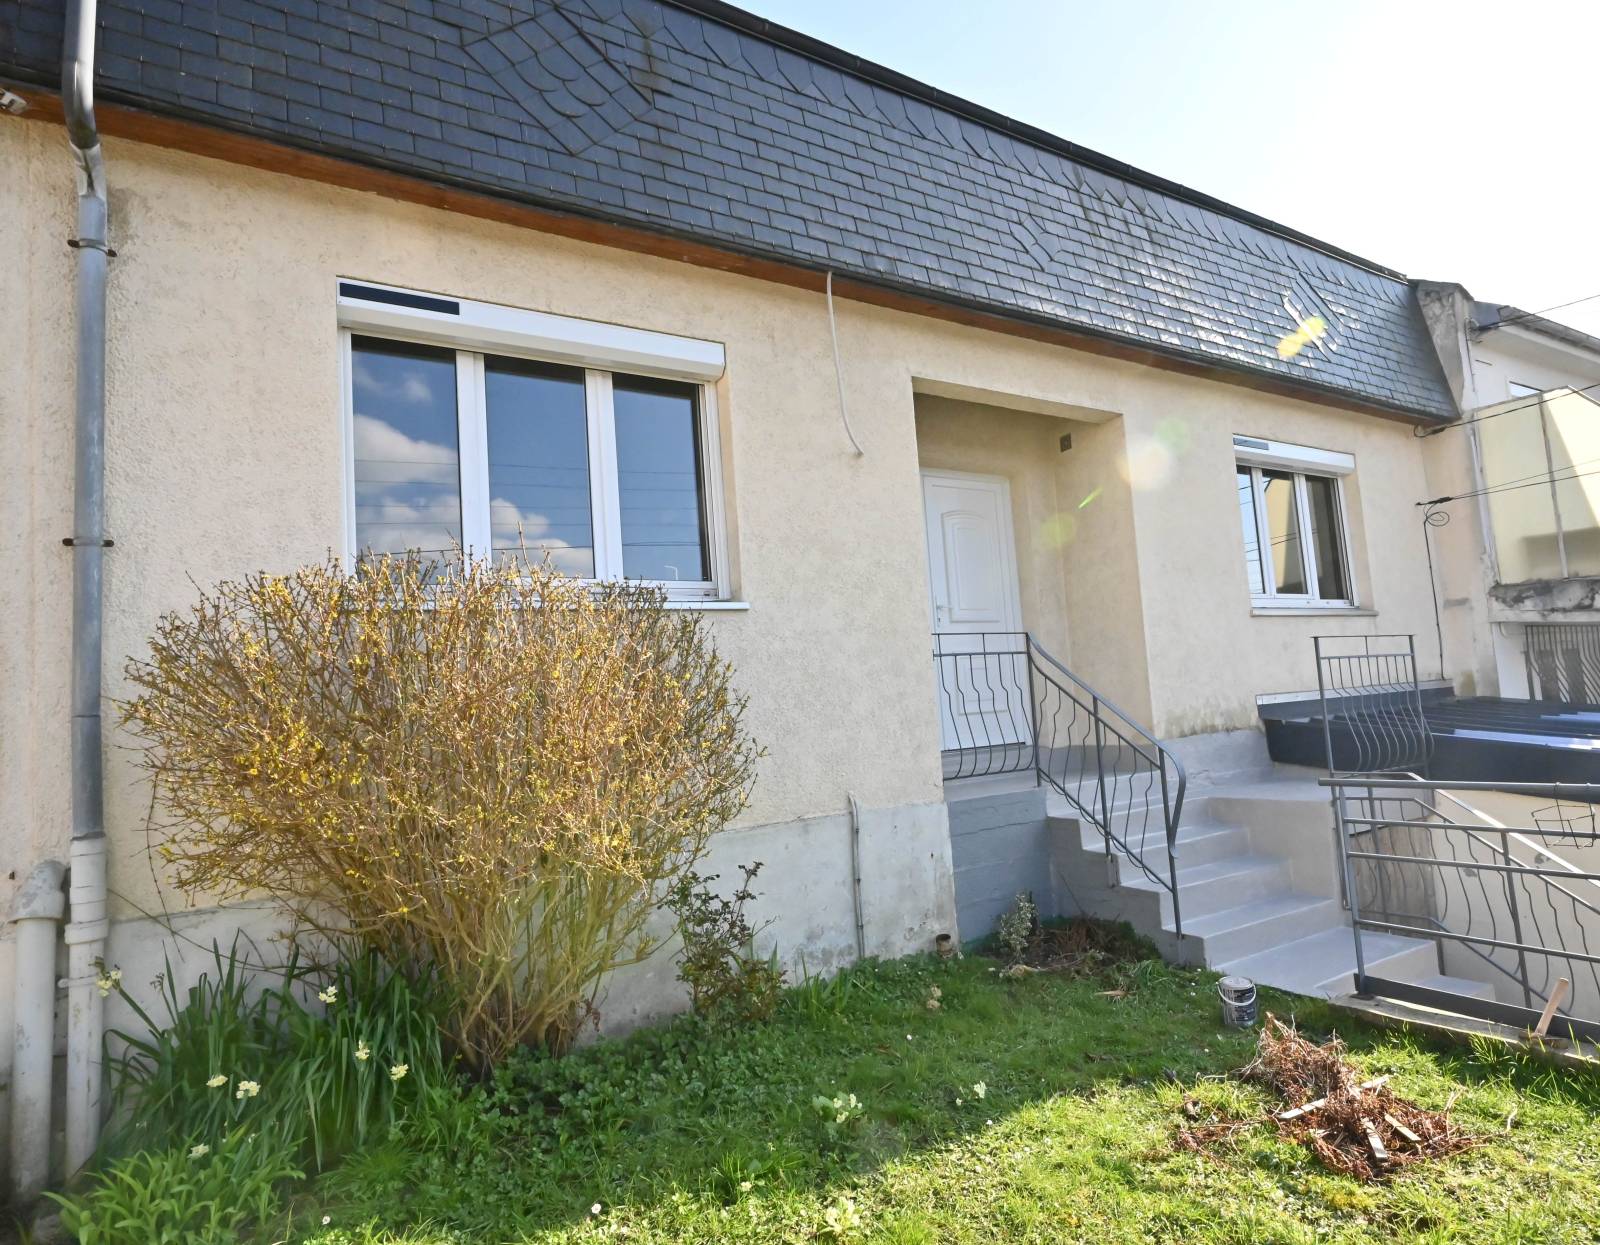 Maison RÉNOVÉE, avec JARDIN et GARAGE située au HAVRE secteur Sainte-Cécile (76610)